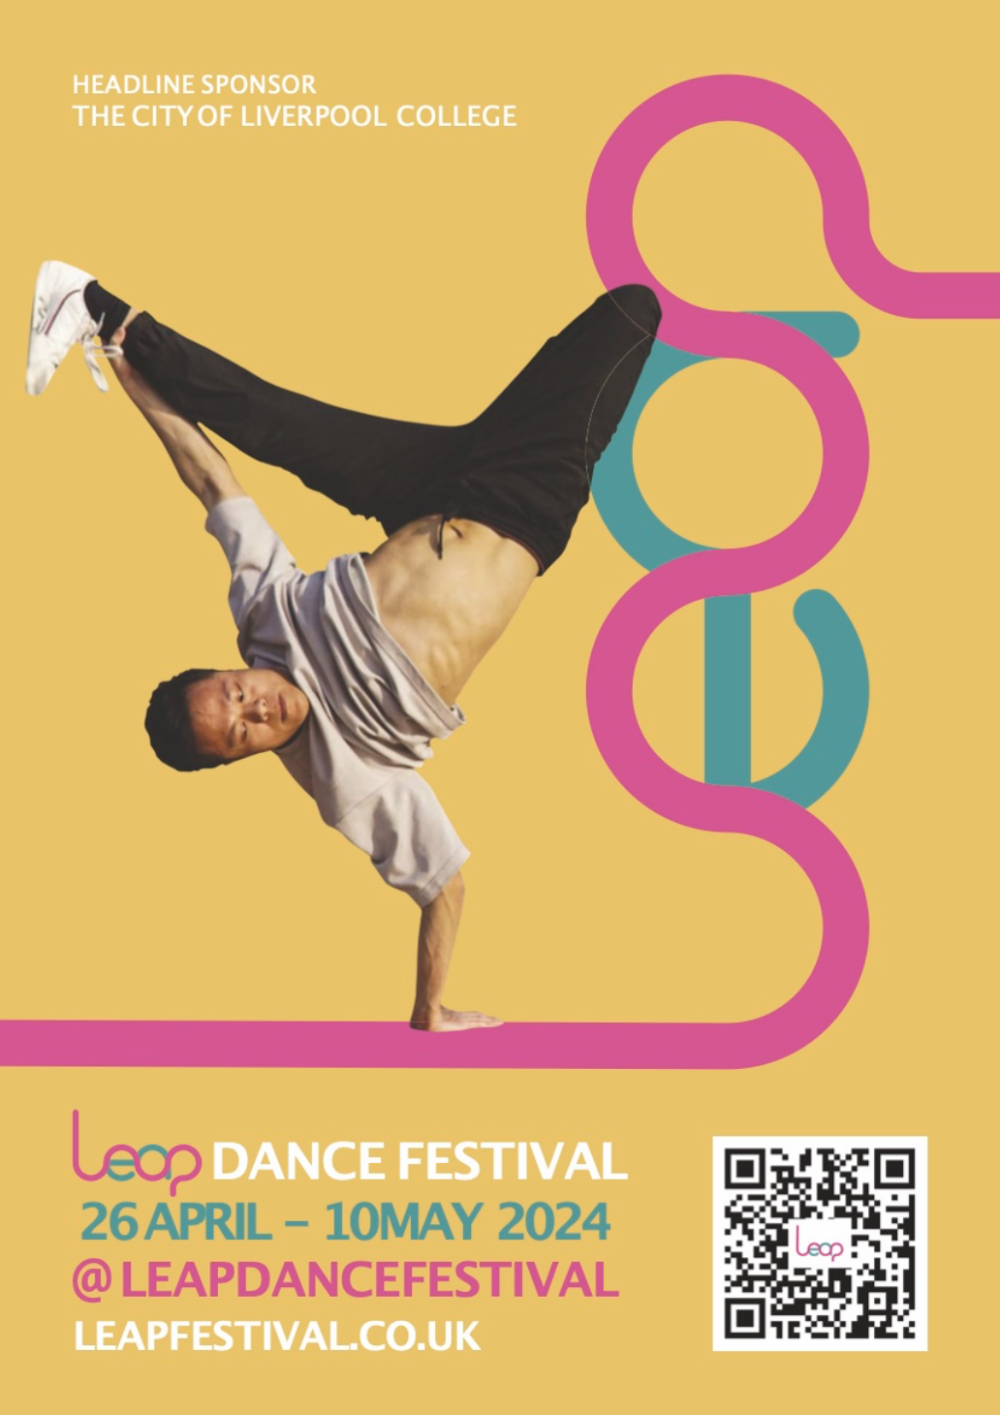 Credit: Leap Dance Festival